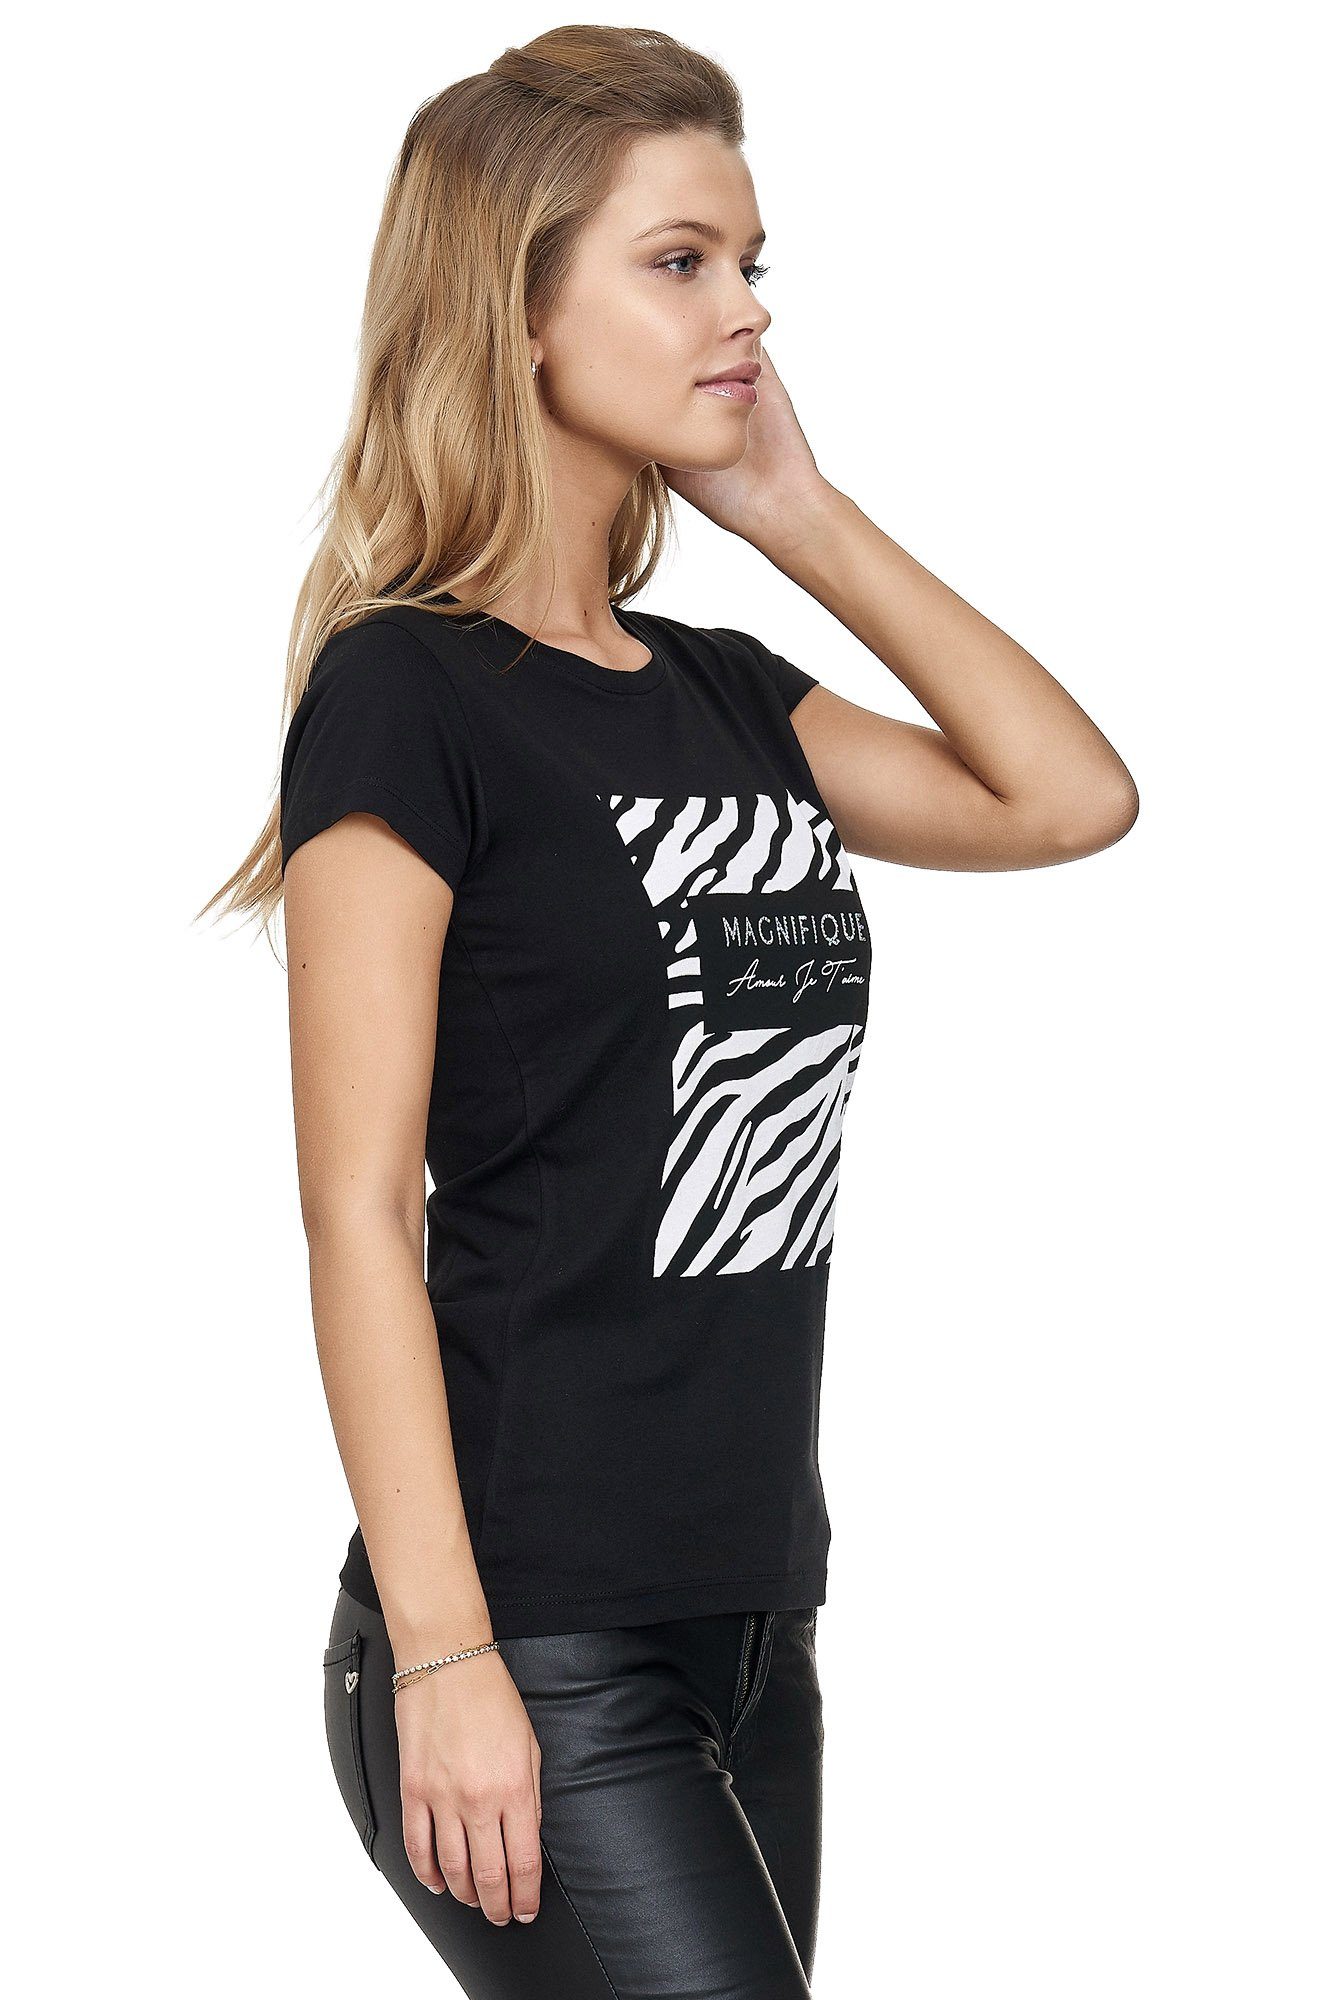 Decay Frontprint schwarz glänzendem T-Shirt mit